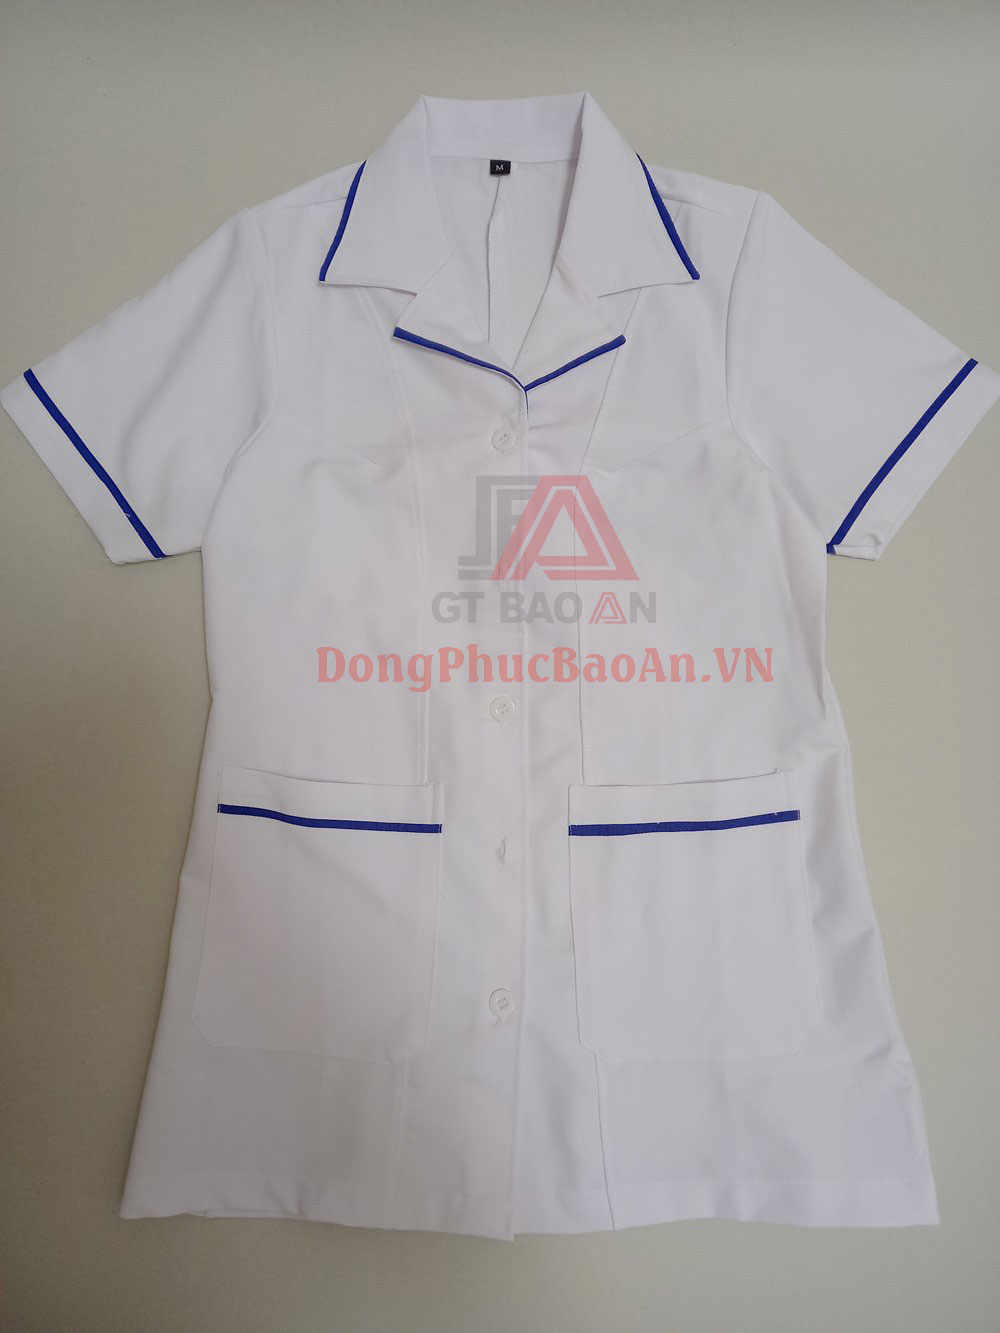 [Có Sẵn] Đồng phục blouse trắng bác sĩ, y tá tay ngắn phối viền xanh bích chất Cotton Hàn